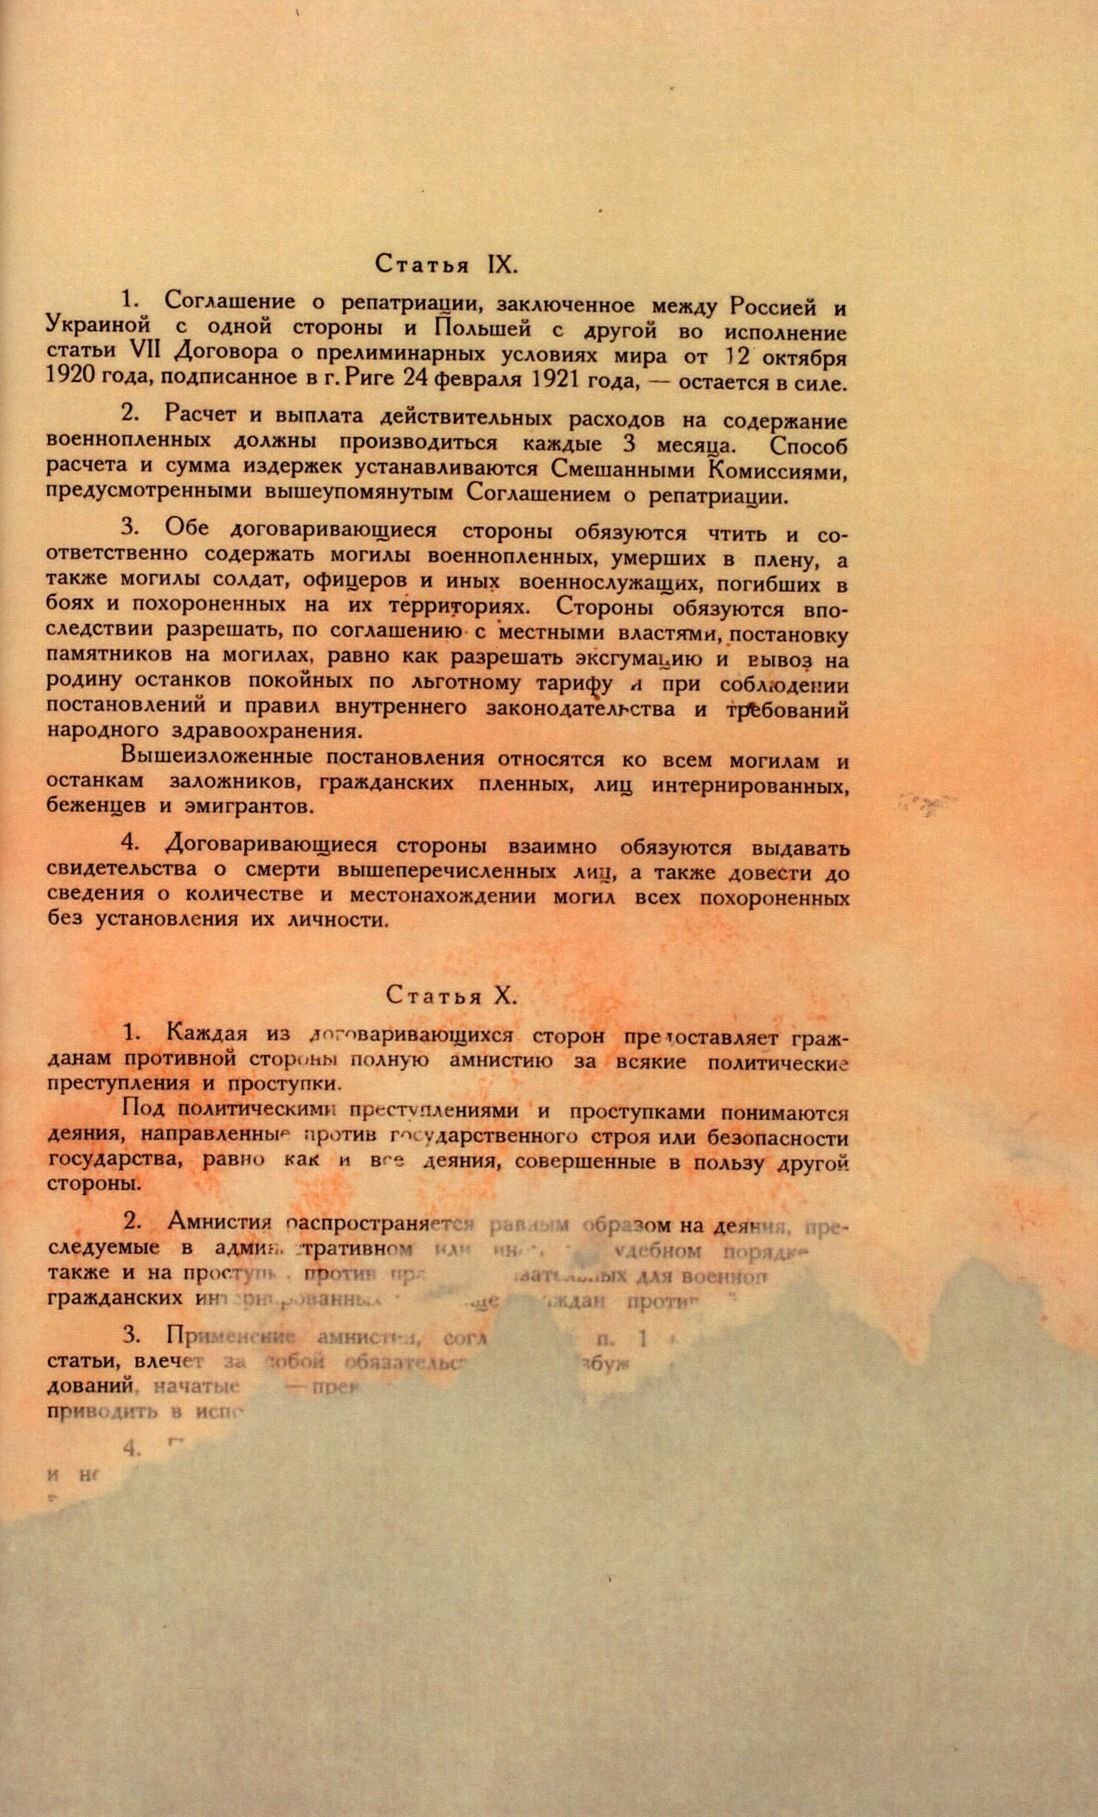 Traktat Pokoju między Polską a Rosją i Ukrainą podpisany w Rydze dnia 18 marca 1921 roku, s. 75, MSZ, sygn. 6739.